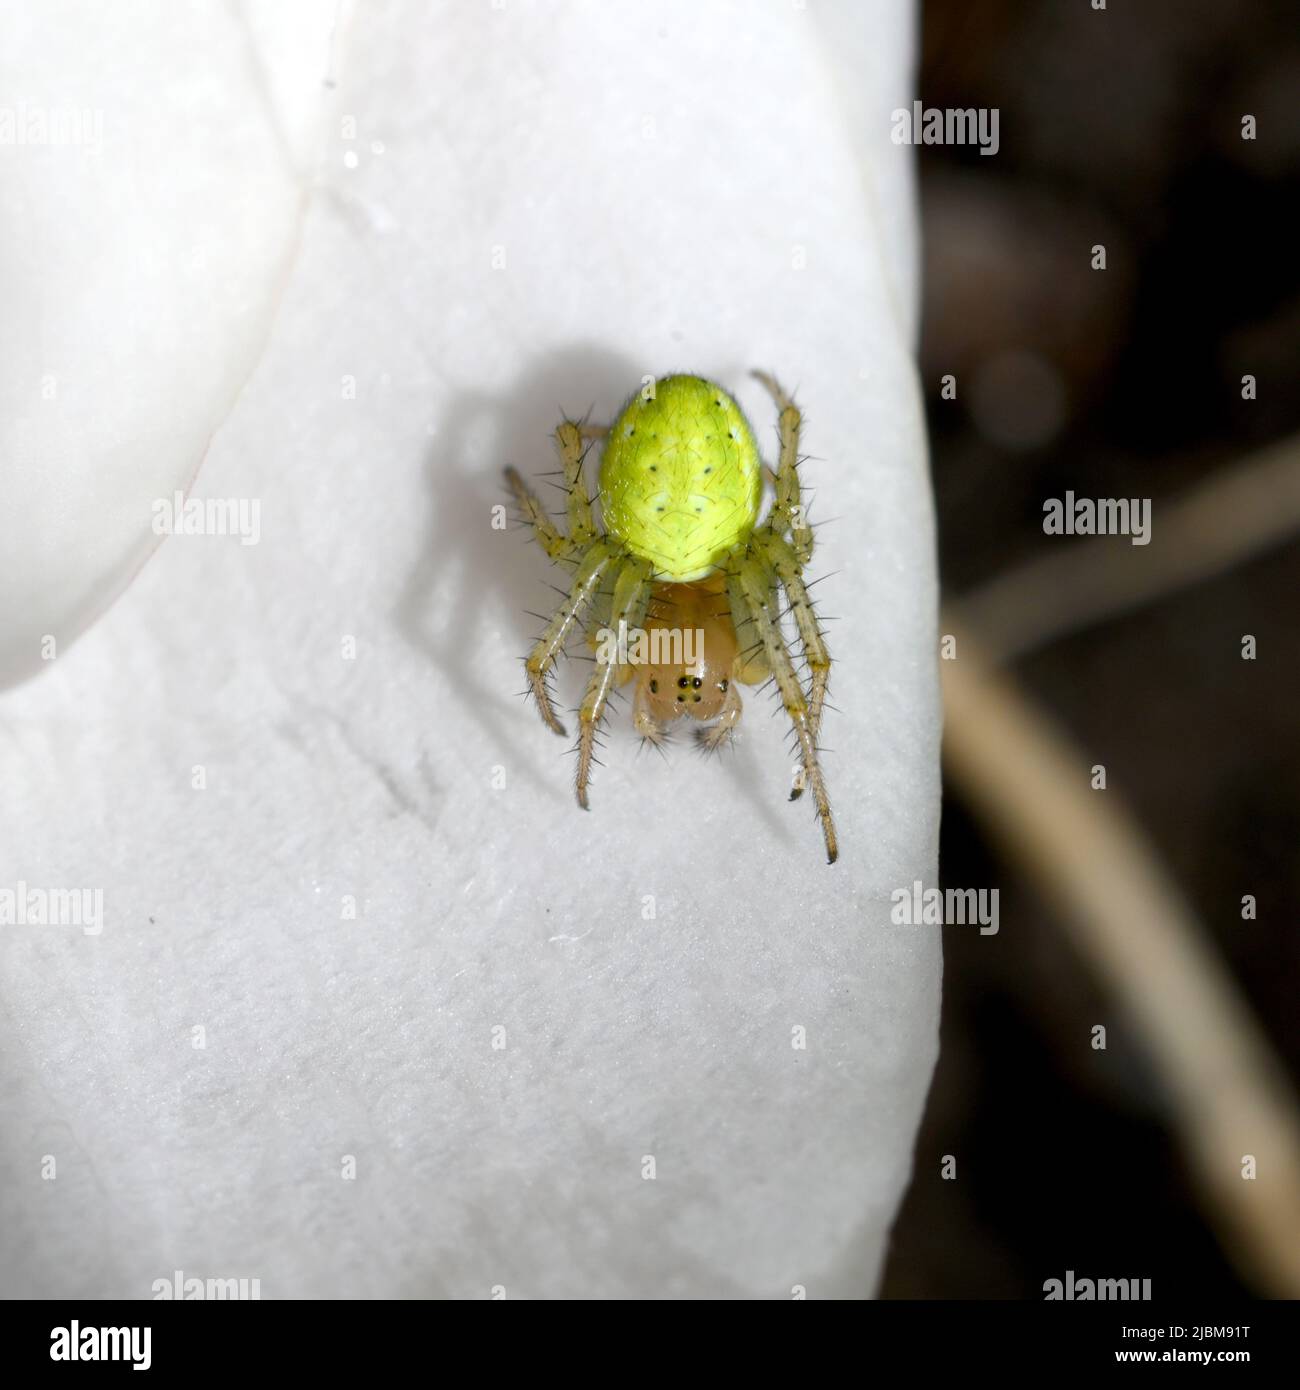 Une jeune araignée de jardin sur des pétales blancs s'appuie sur ses couleurs jaune vif offensives pour avertir des prédateurs. Banque D'Images